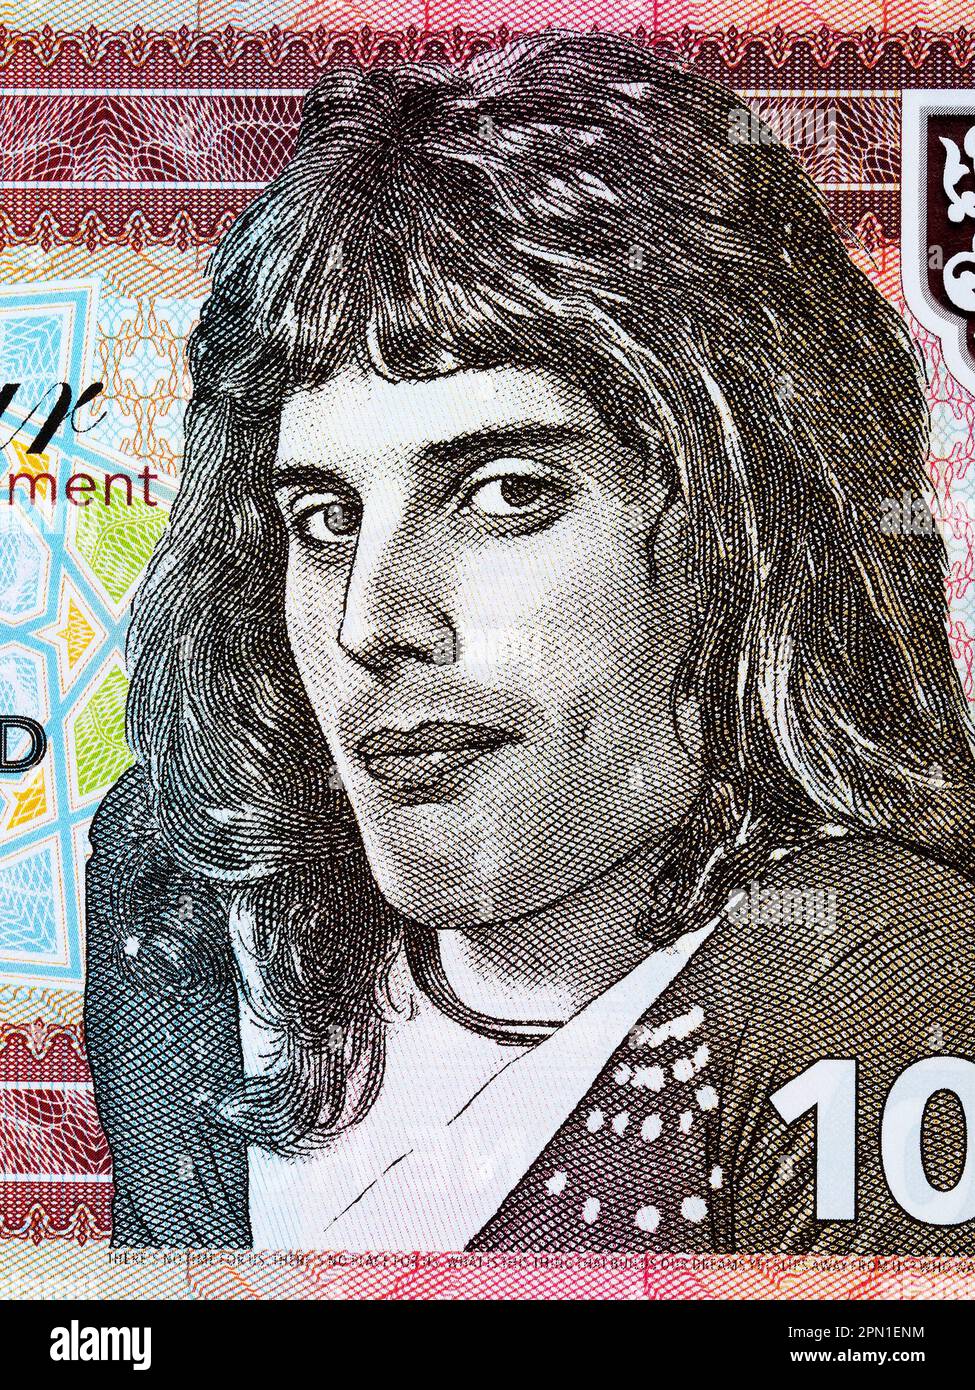 Freddie Mercury a portrait from Zanzibar money Stock Photo